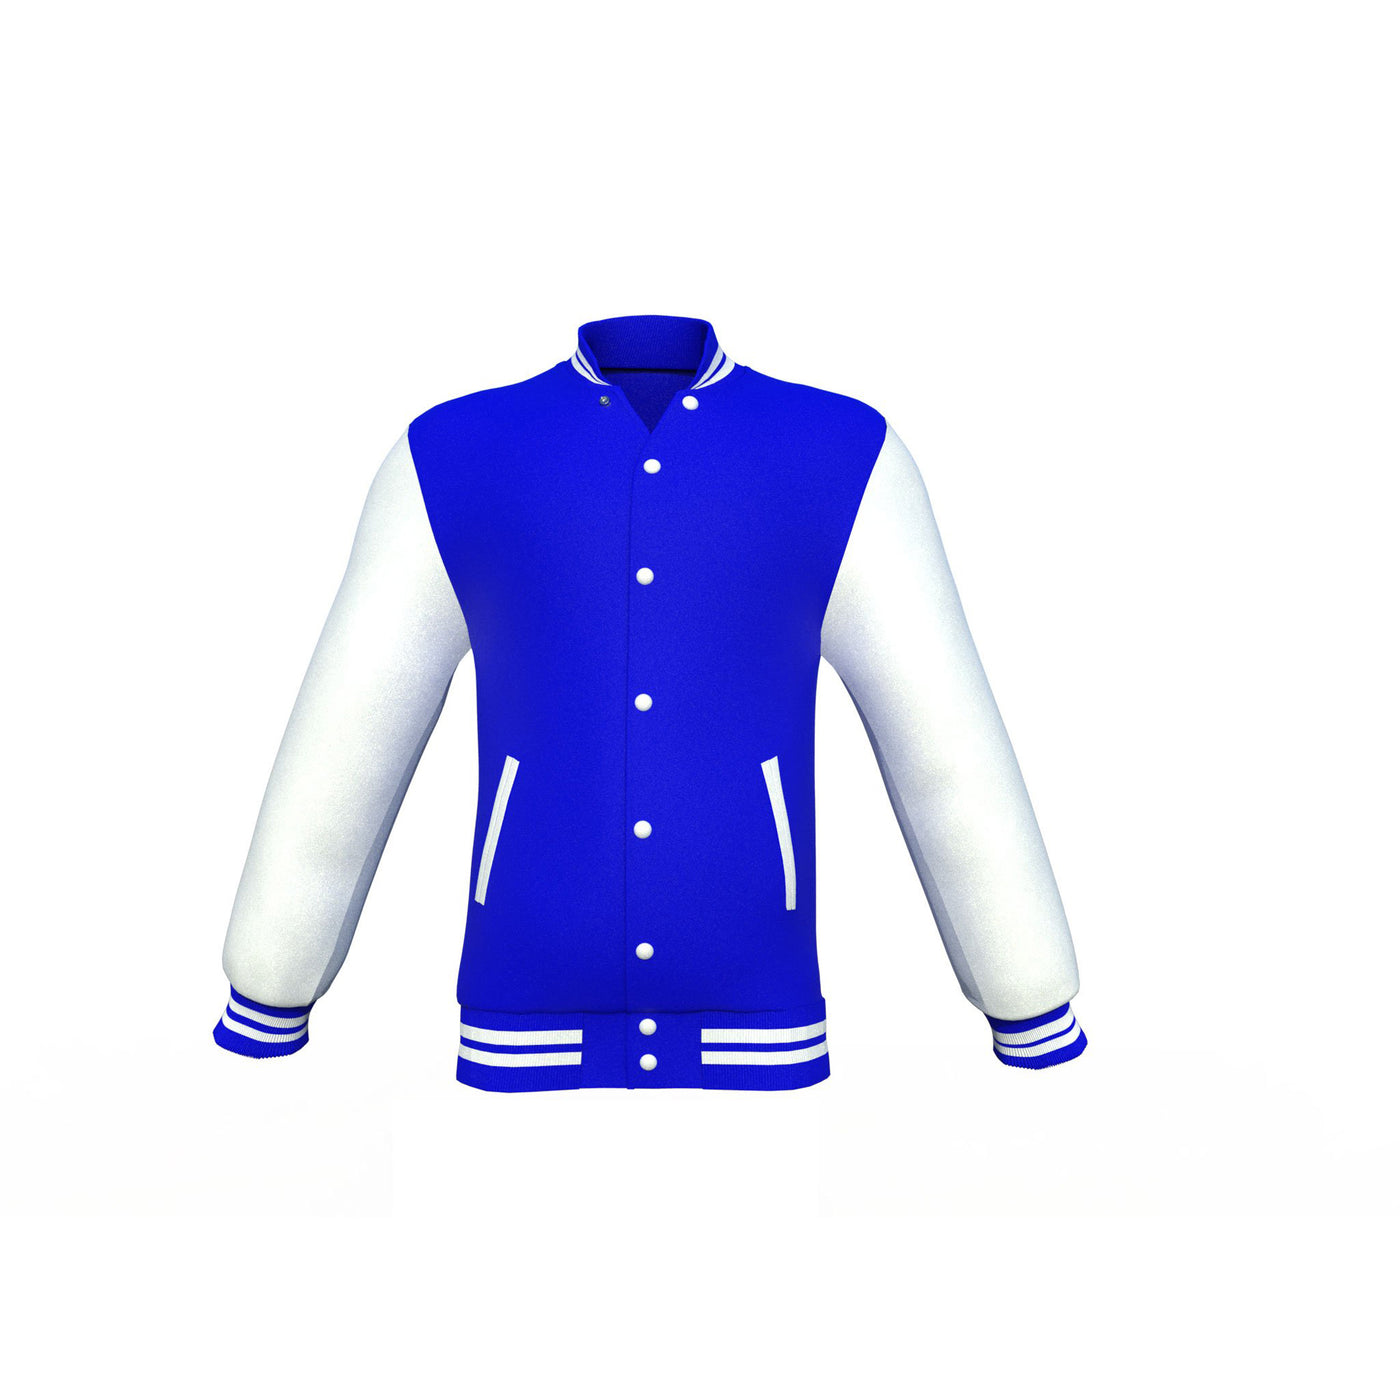 Fashionable Blue Varsity Letterman Jacket with White Sleeves